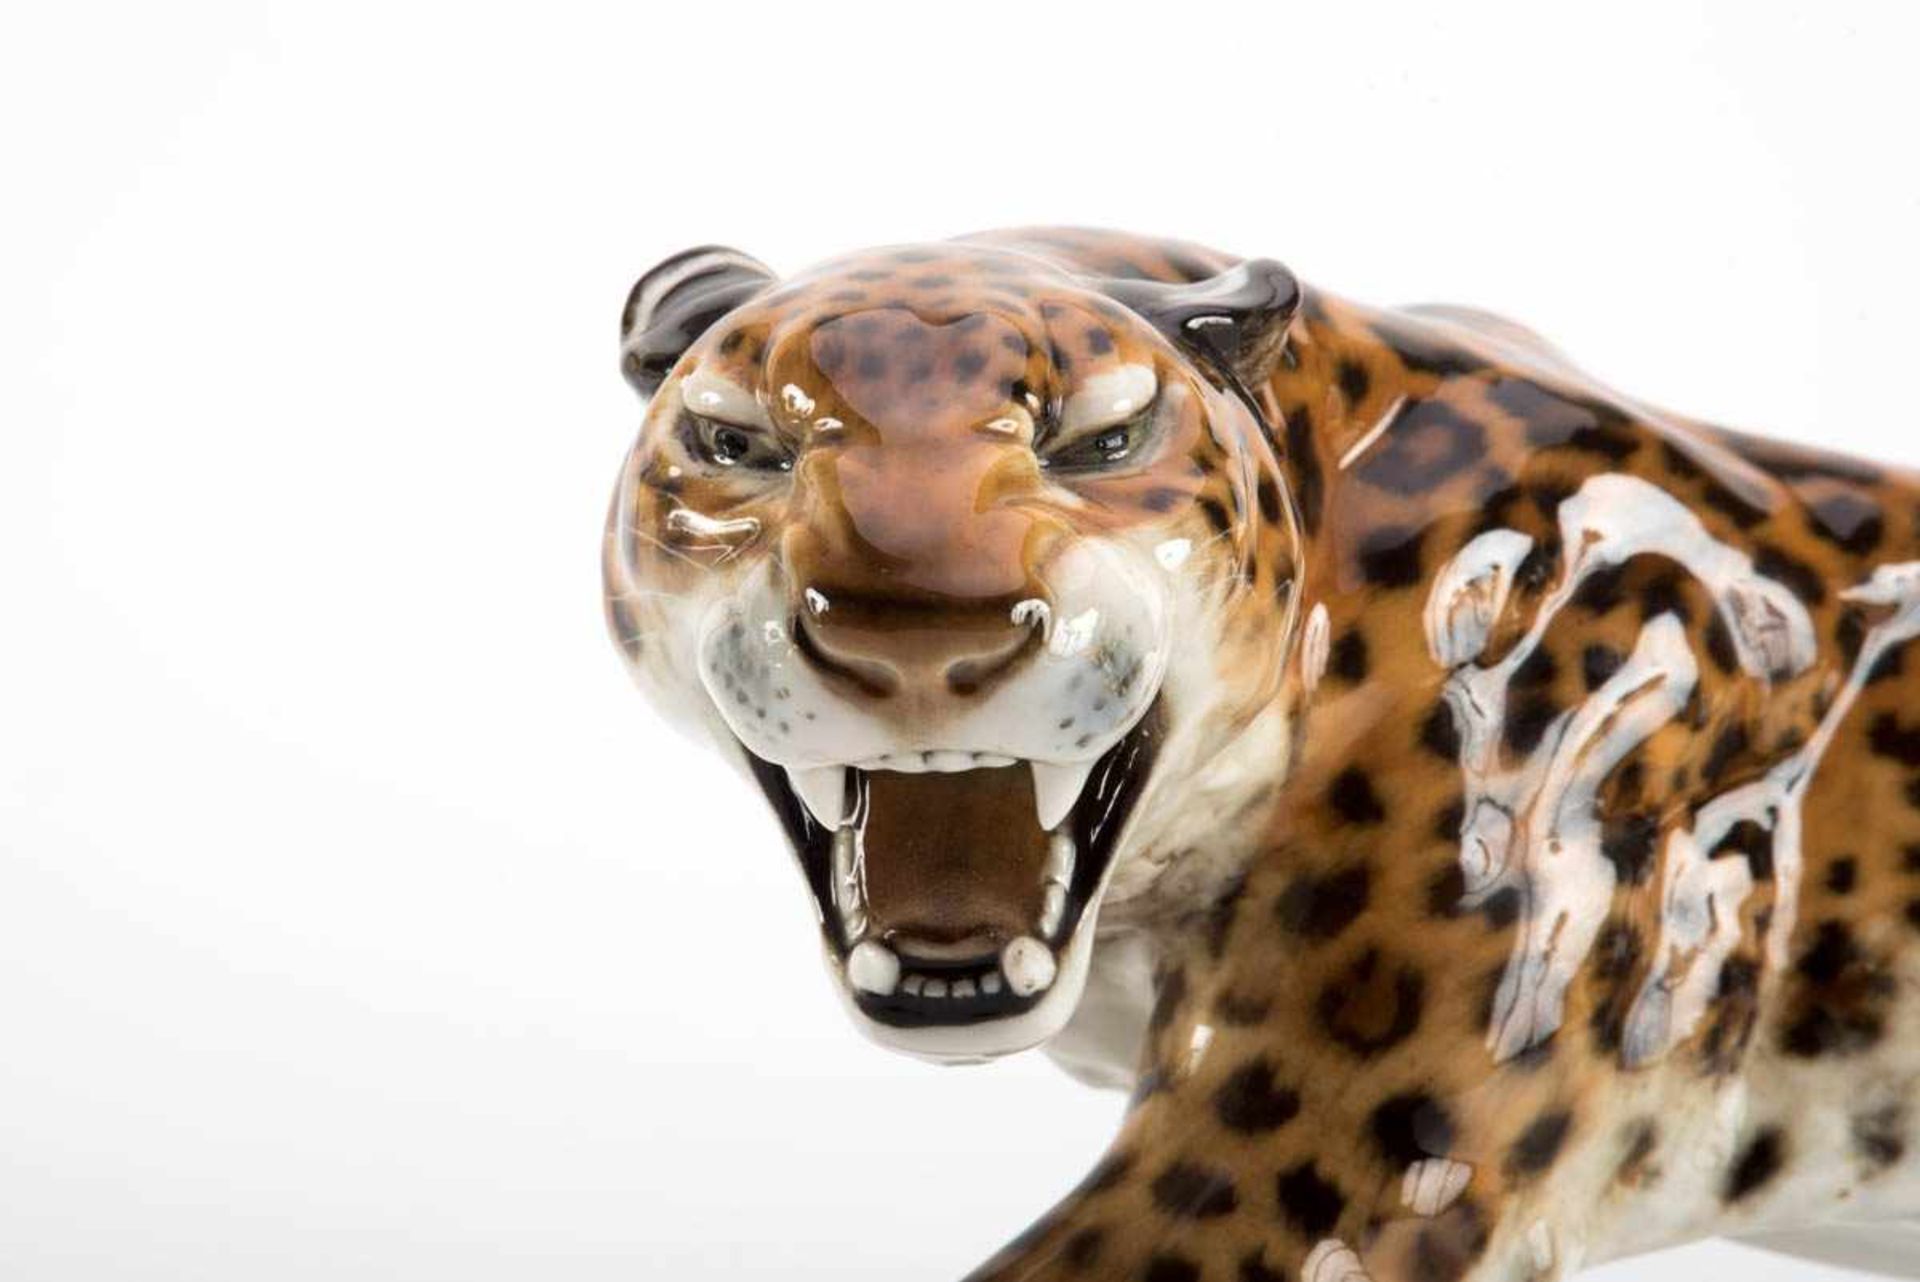 Leopard, Hutschenreuther Darstellung des Raubtieres in lauernder Position. Schwanzspitze rest. - Bild 2 aus 2